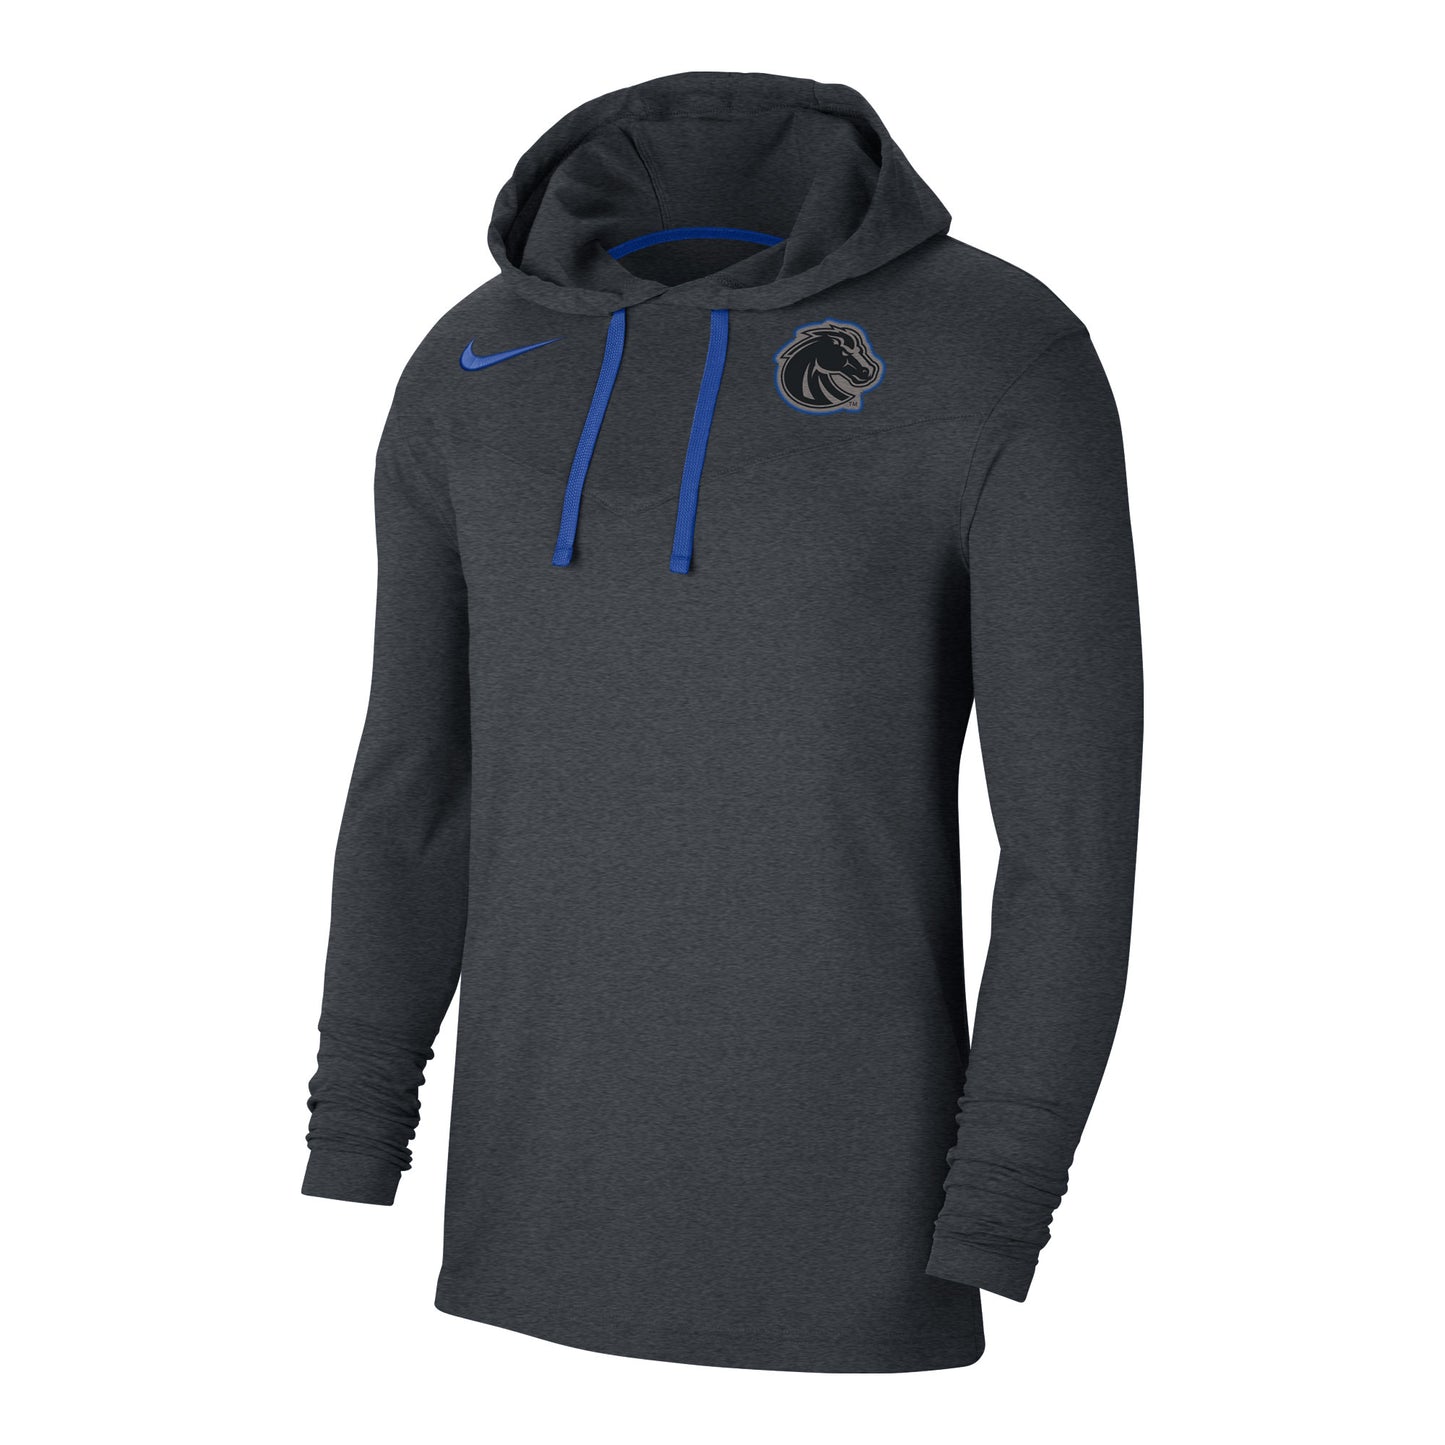 Boise State Broncos Nike Men's Sideline Long Sleeve Hoodie (Grey)